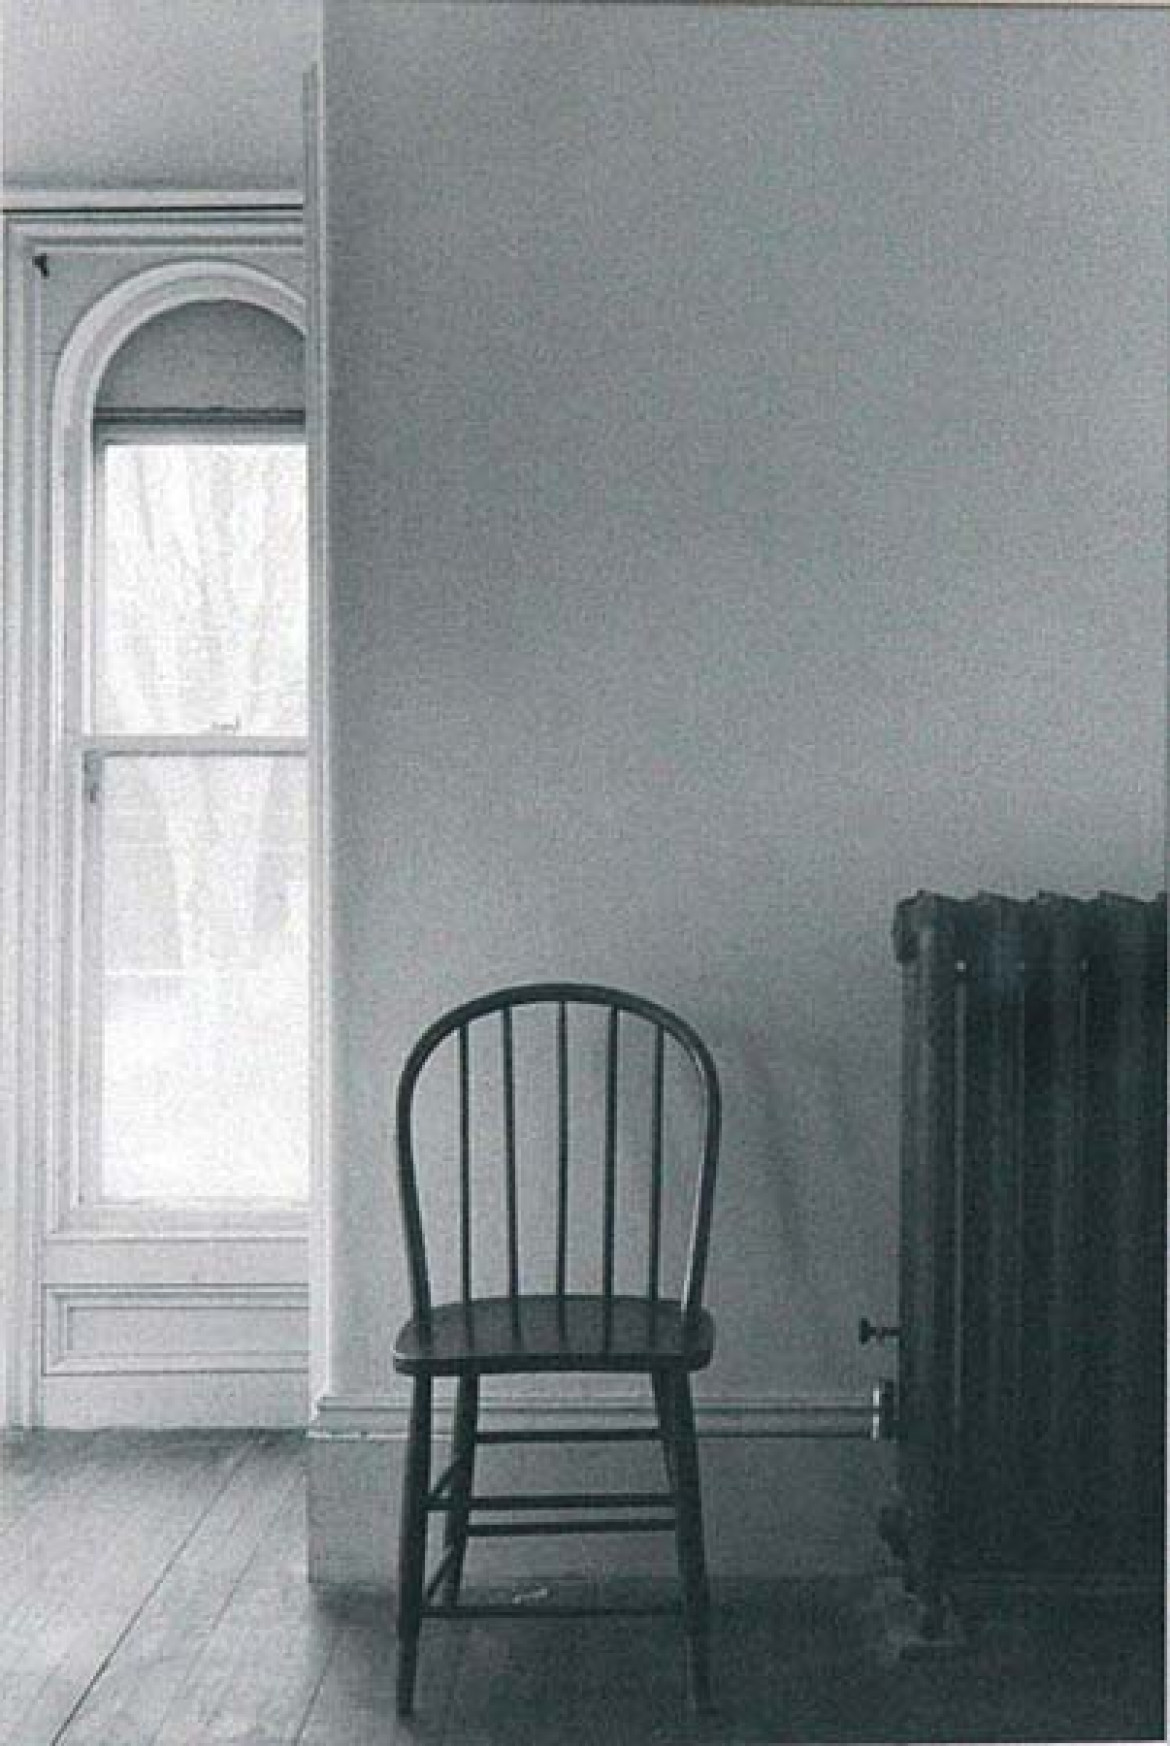 fot. Ewa Rubinstein, "Maine", 1978 r, cena wywoławcza 1100 zł, cena uzyskana 2900 zł